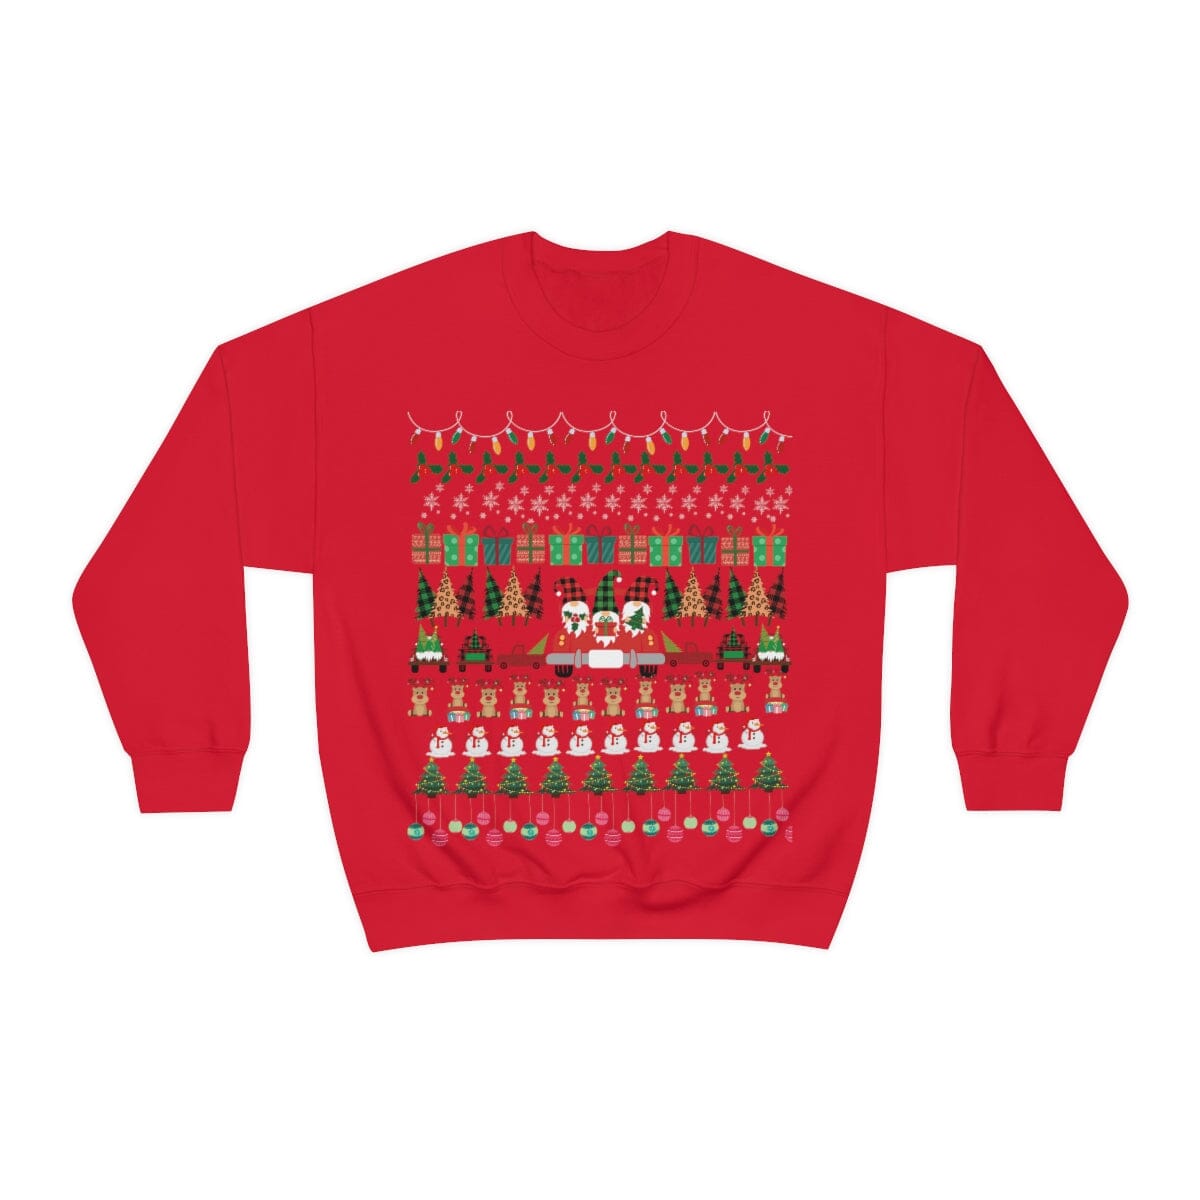 Sweater Unisex para lucir esta Navidad - Ugly Christmas Sweater - Escoge entre 4 colores. Sweatshirt Printify S Red 